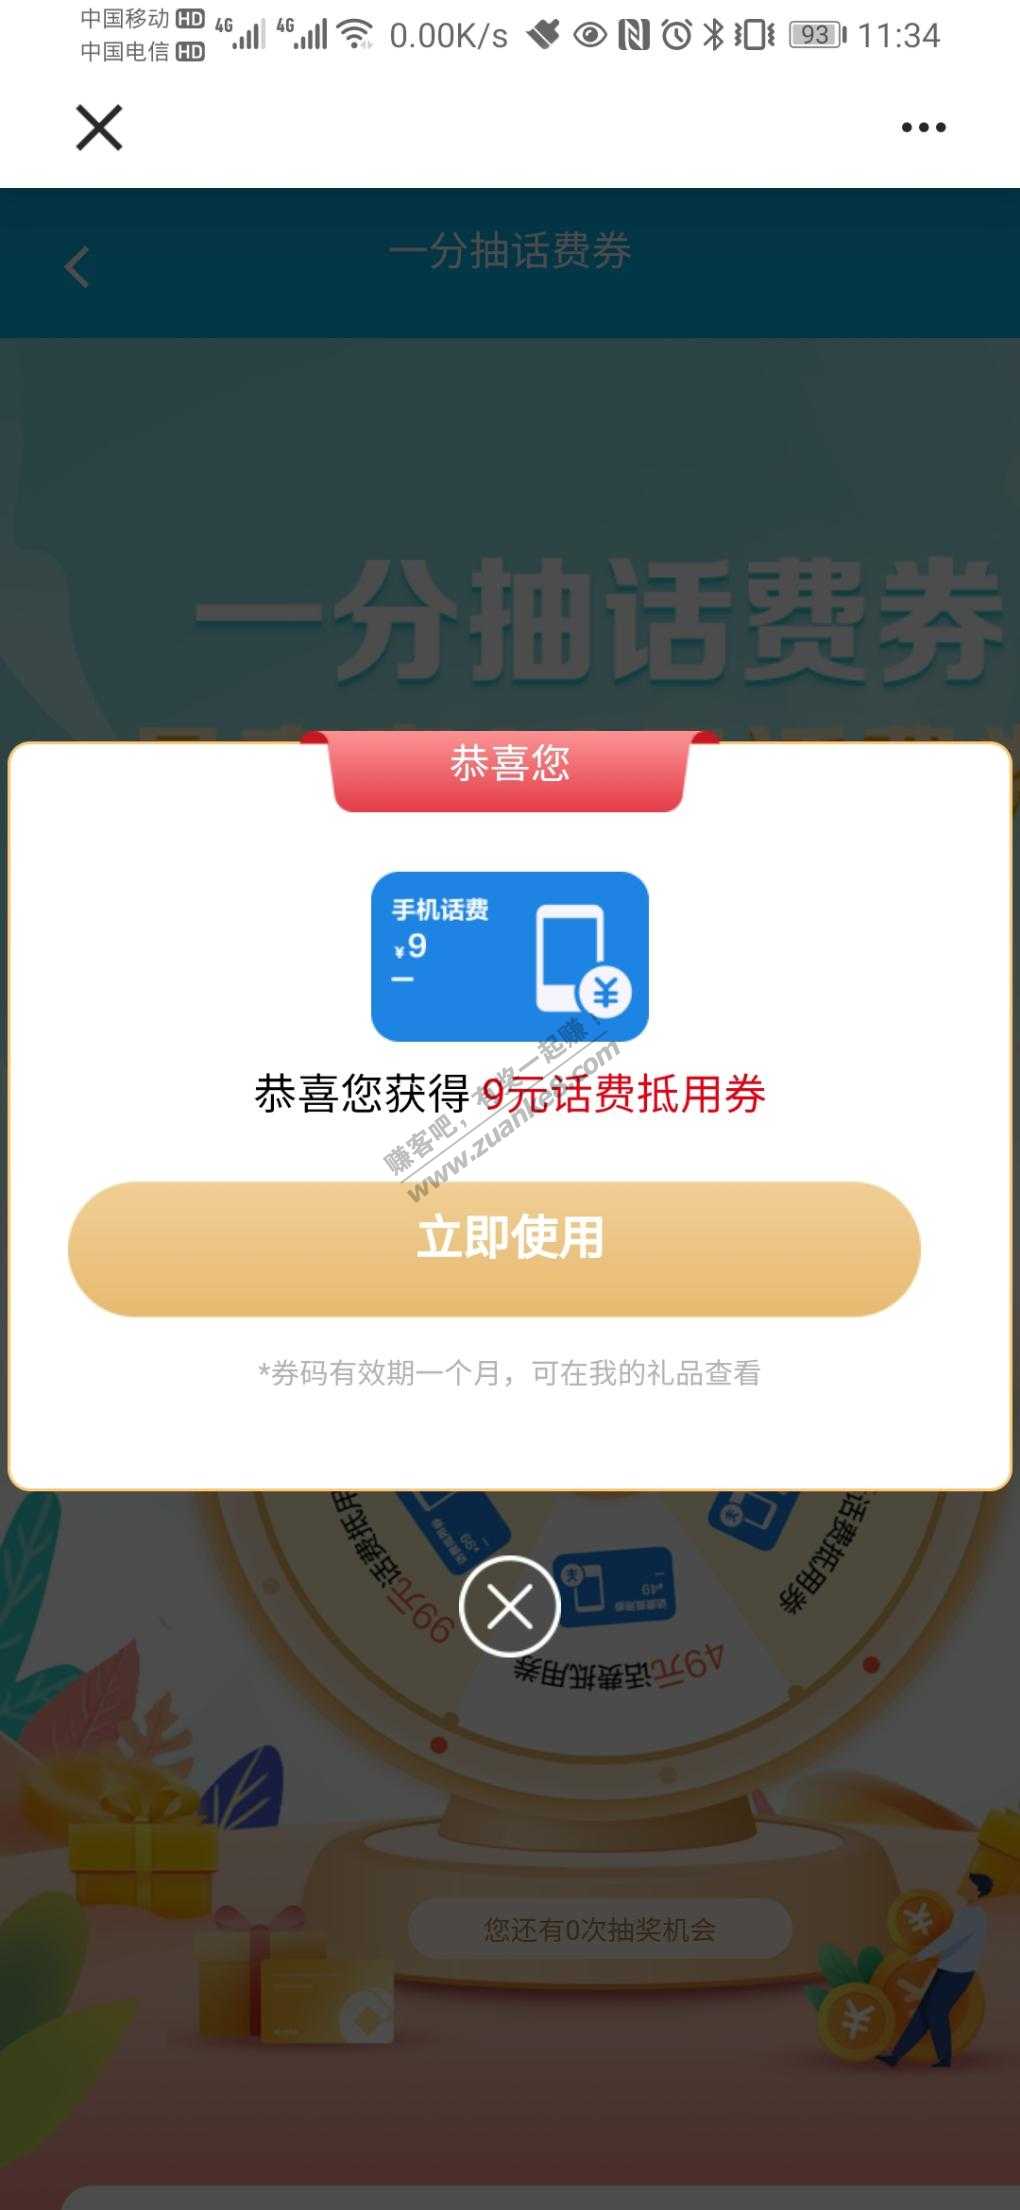 (福建)建行app一分钱抽话费有水-惠小助(52huixz.com)